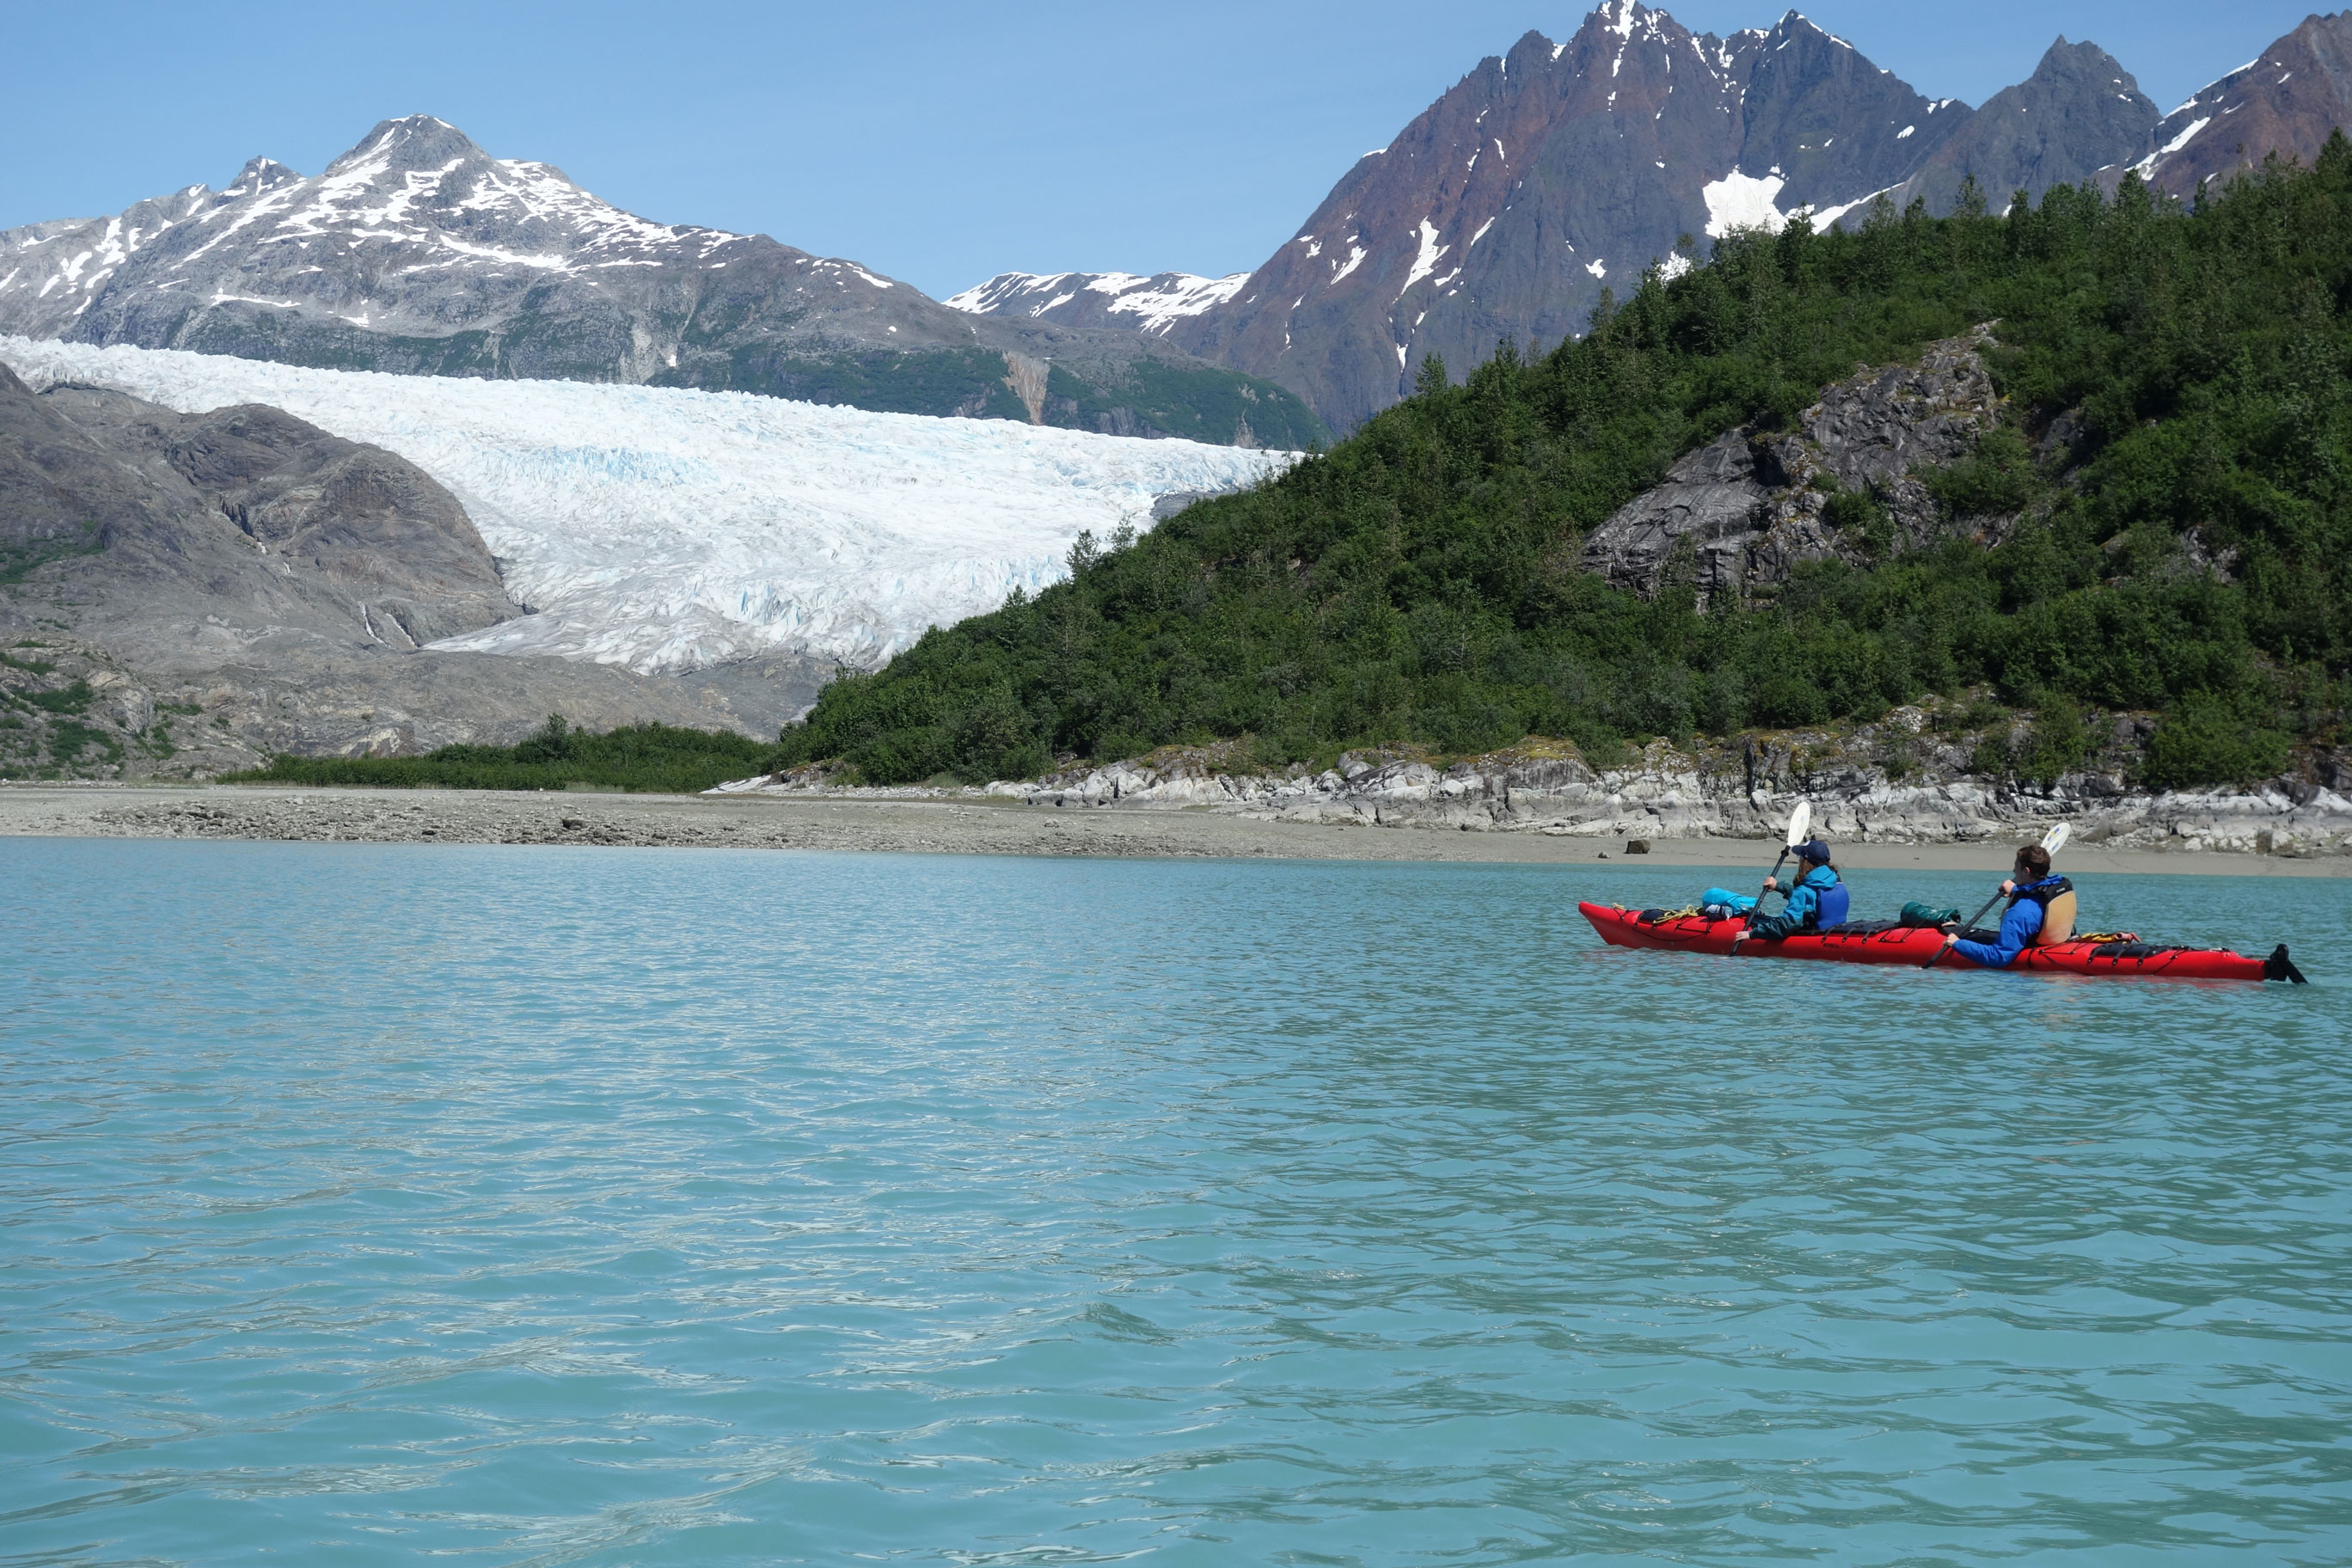 Kayaking trip in Glacier Bay National Park in Alaska.